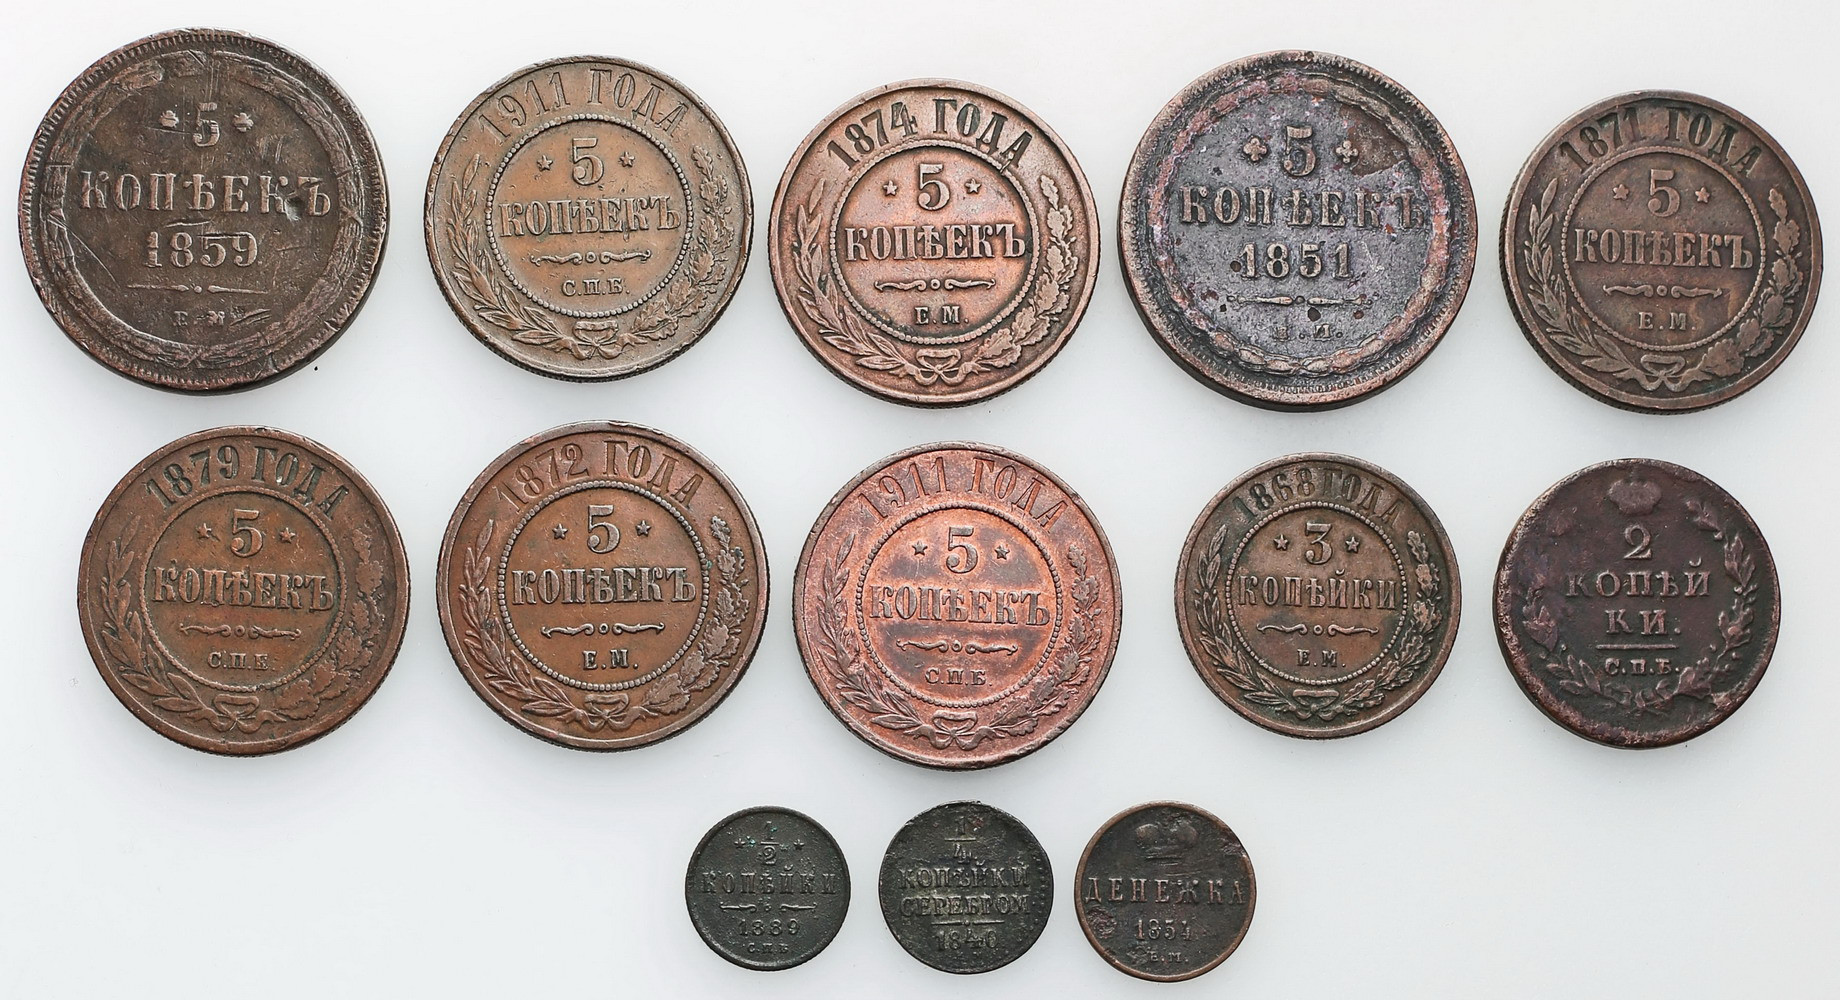 Rosja. Zestaw monet miedzianych 1812-1911  - 13 sztuk